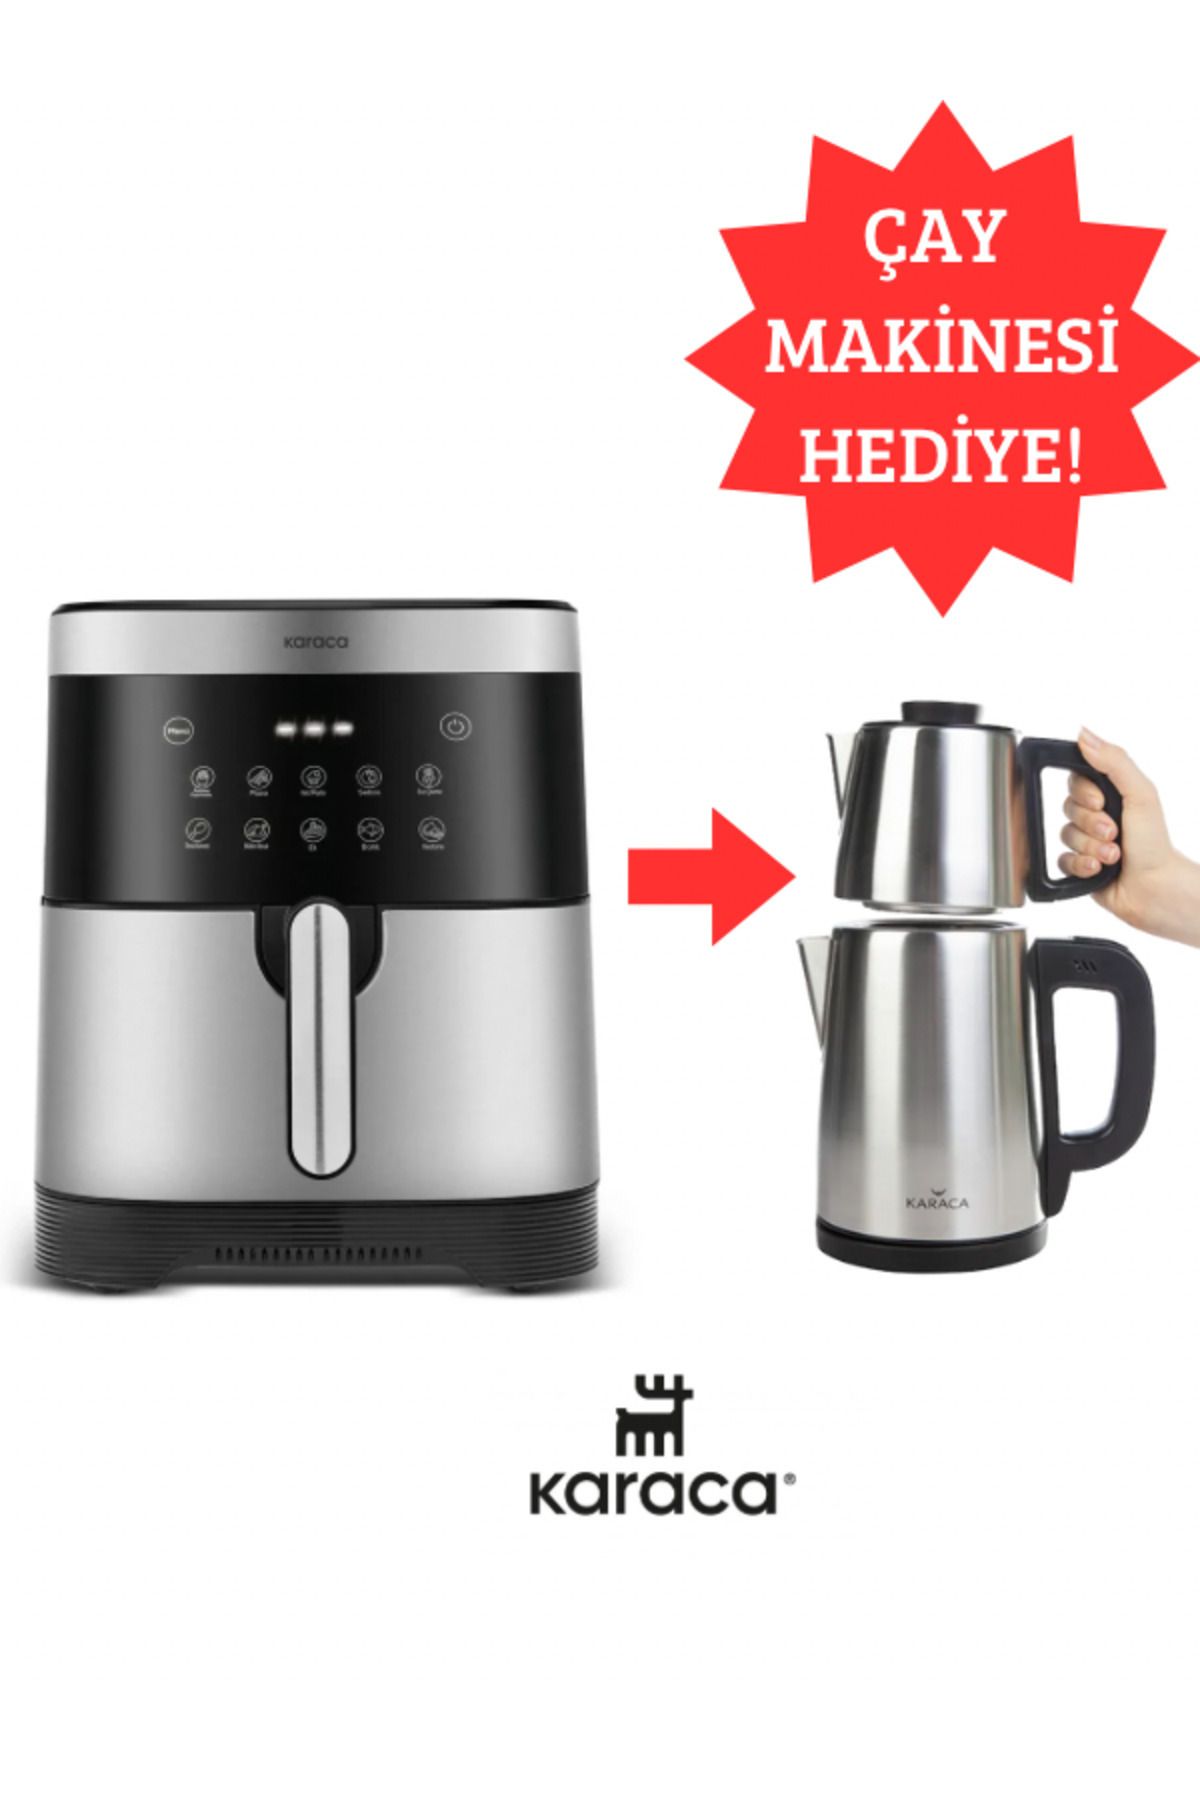 Karaca 8 Kişilik Aile Boyu Kapasiteli 10 Farklı Pişirme Fonksiyonlu Premium Airfryer - Çay Makinesi Hediye!